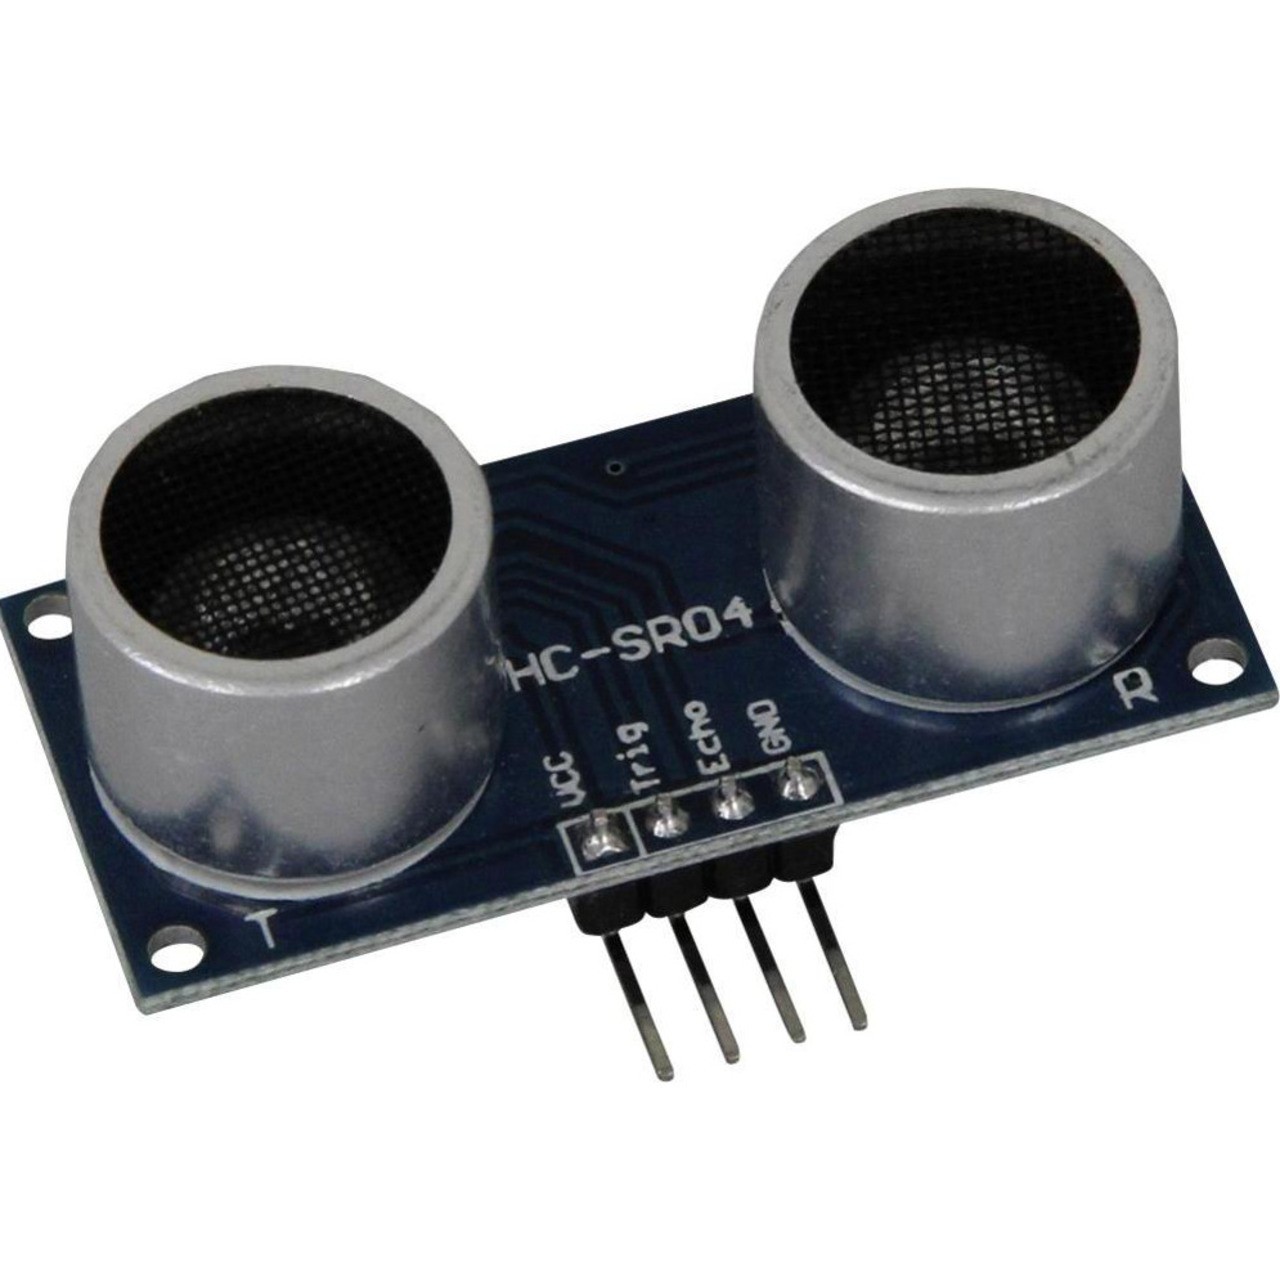 Ultraschall-Abstandssensor HC-SR04 für Minicomputer wie Raspberry Pi- Arduino und Co-